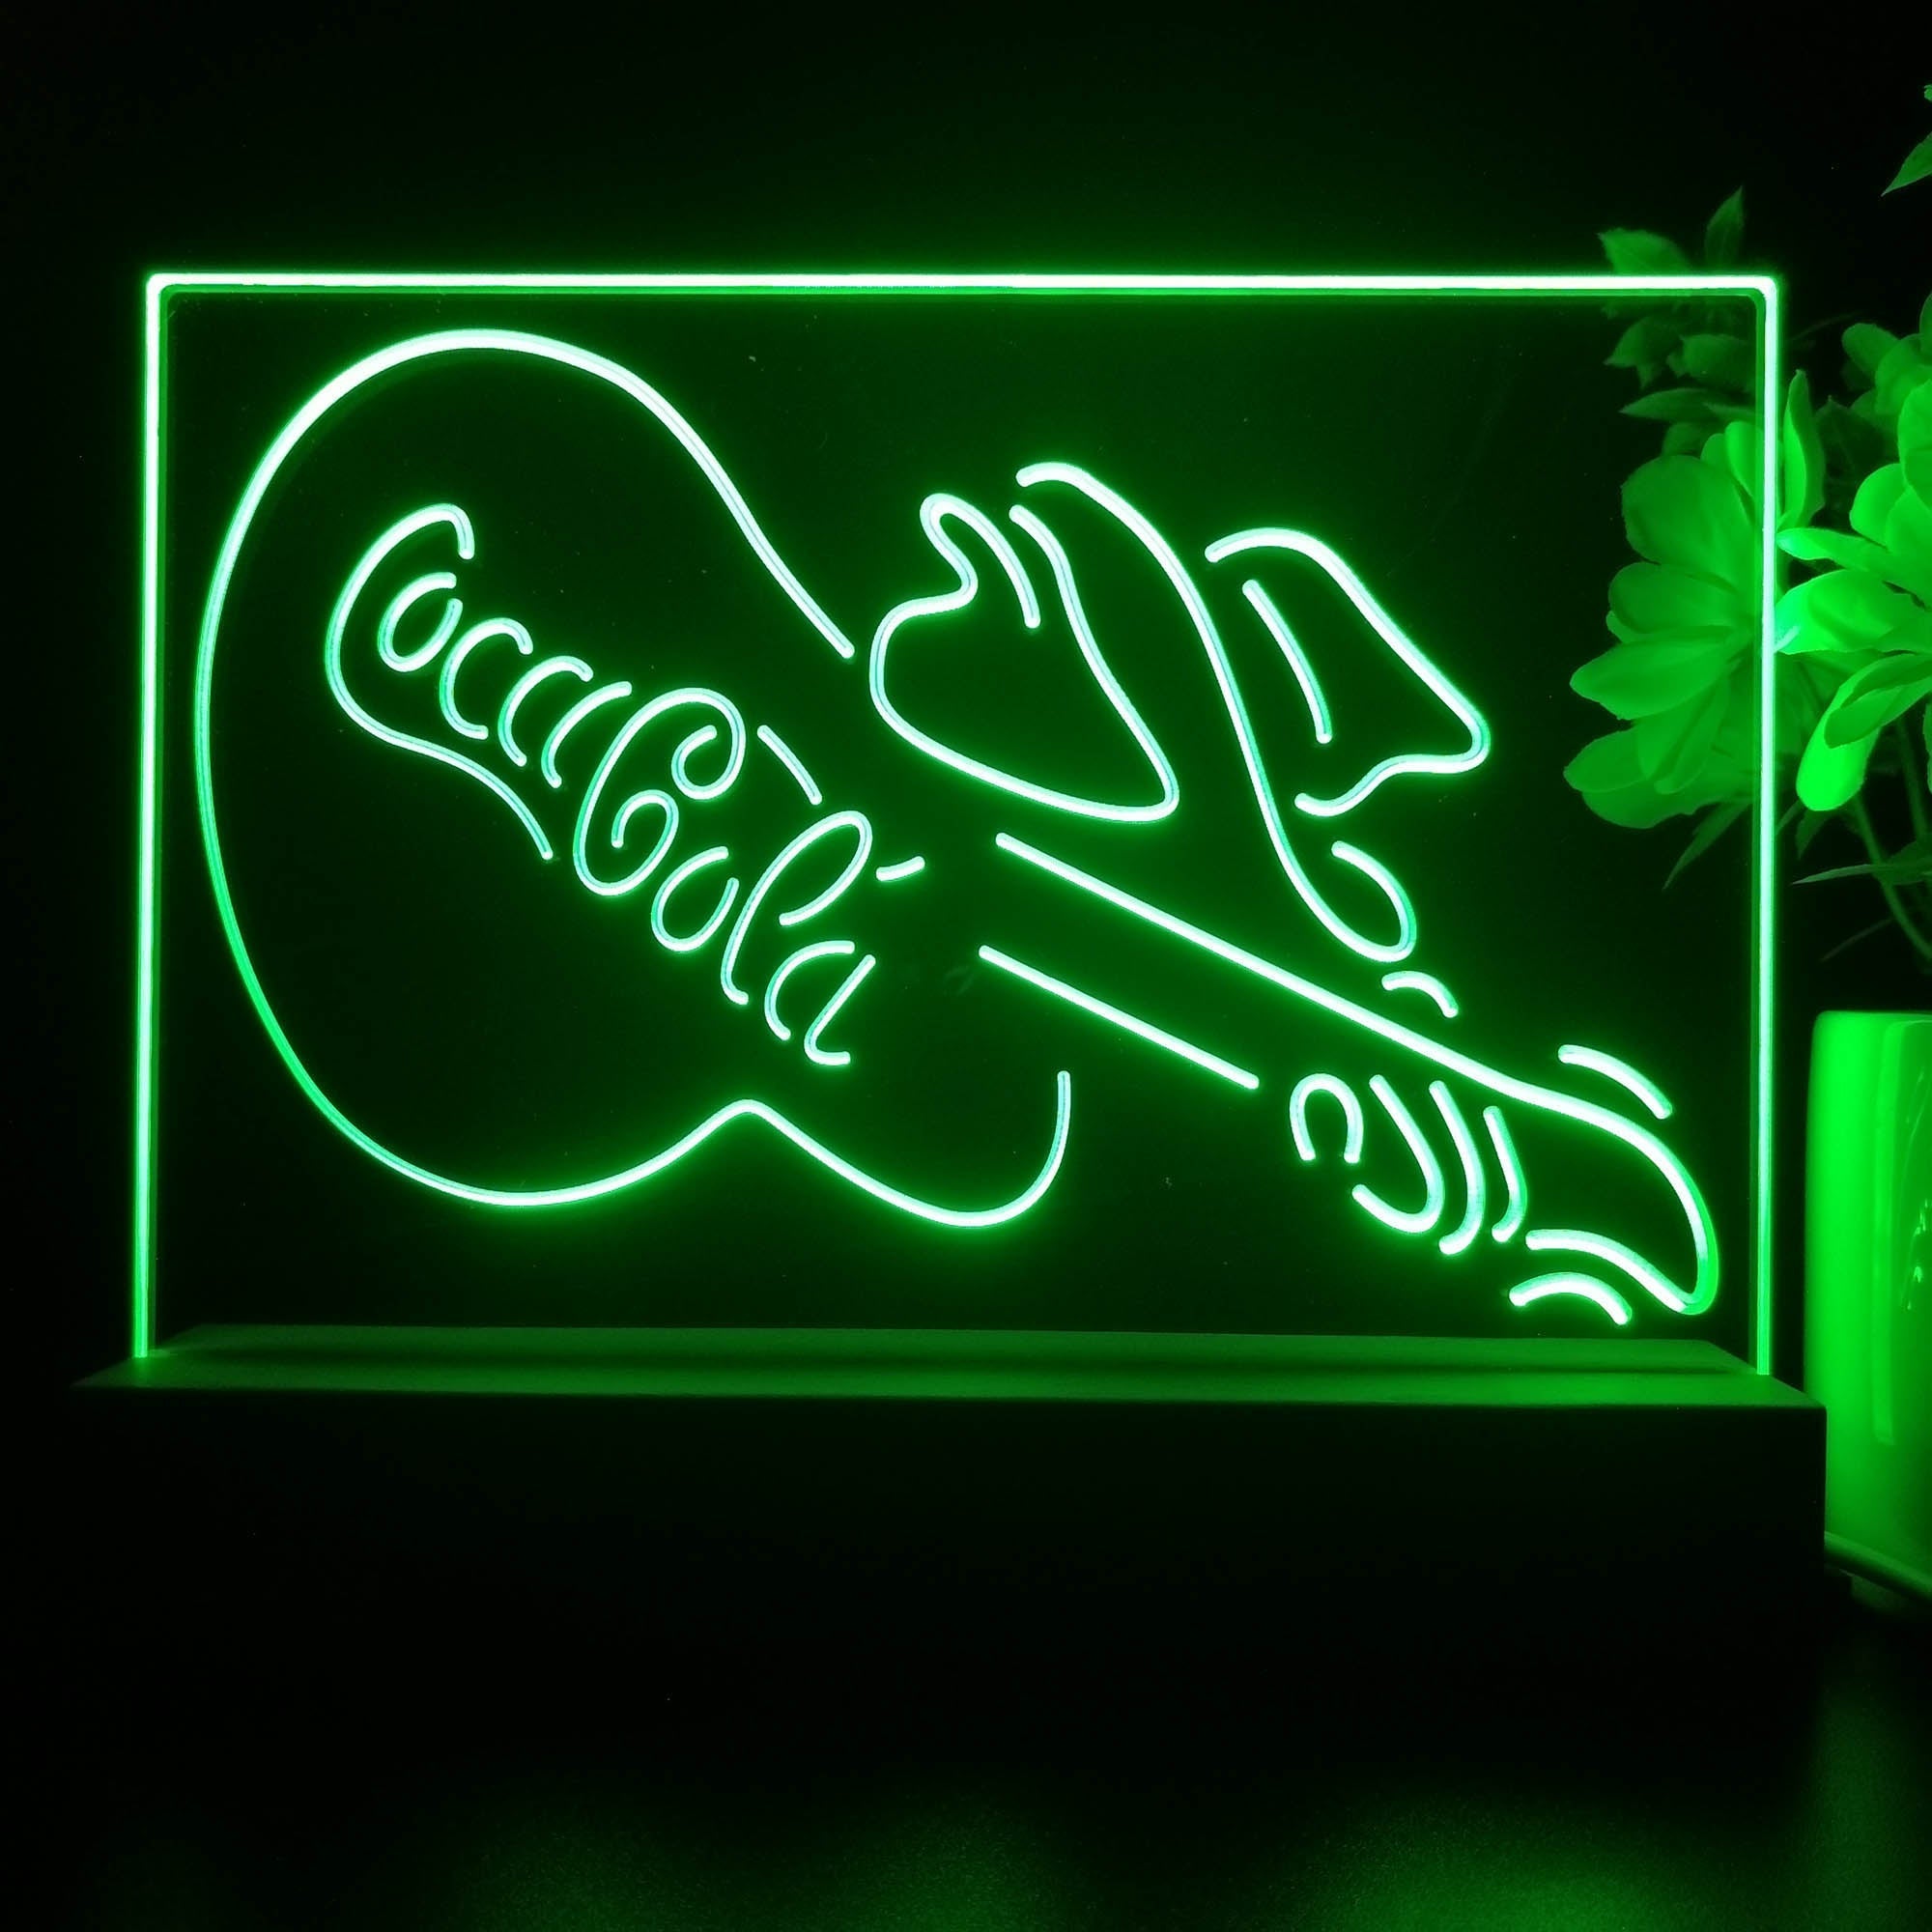 Coca Cola Guitar Bar Neon Sign Pub Bar Lamp